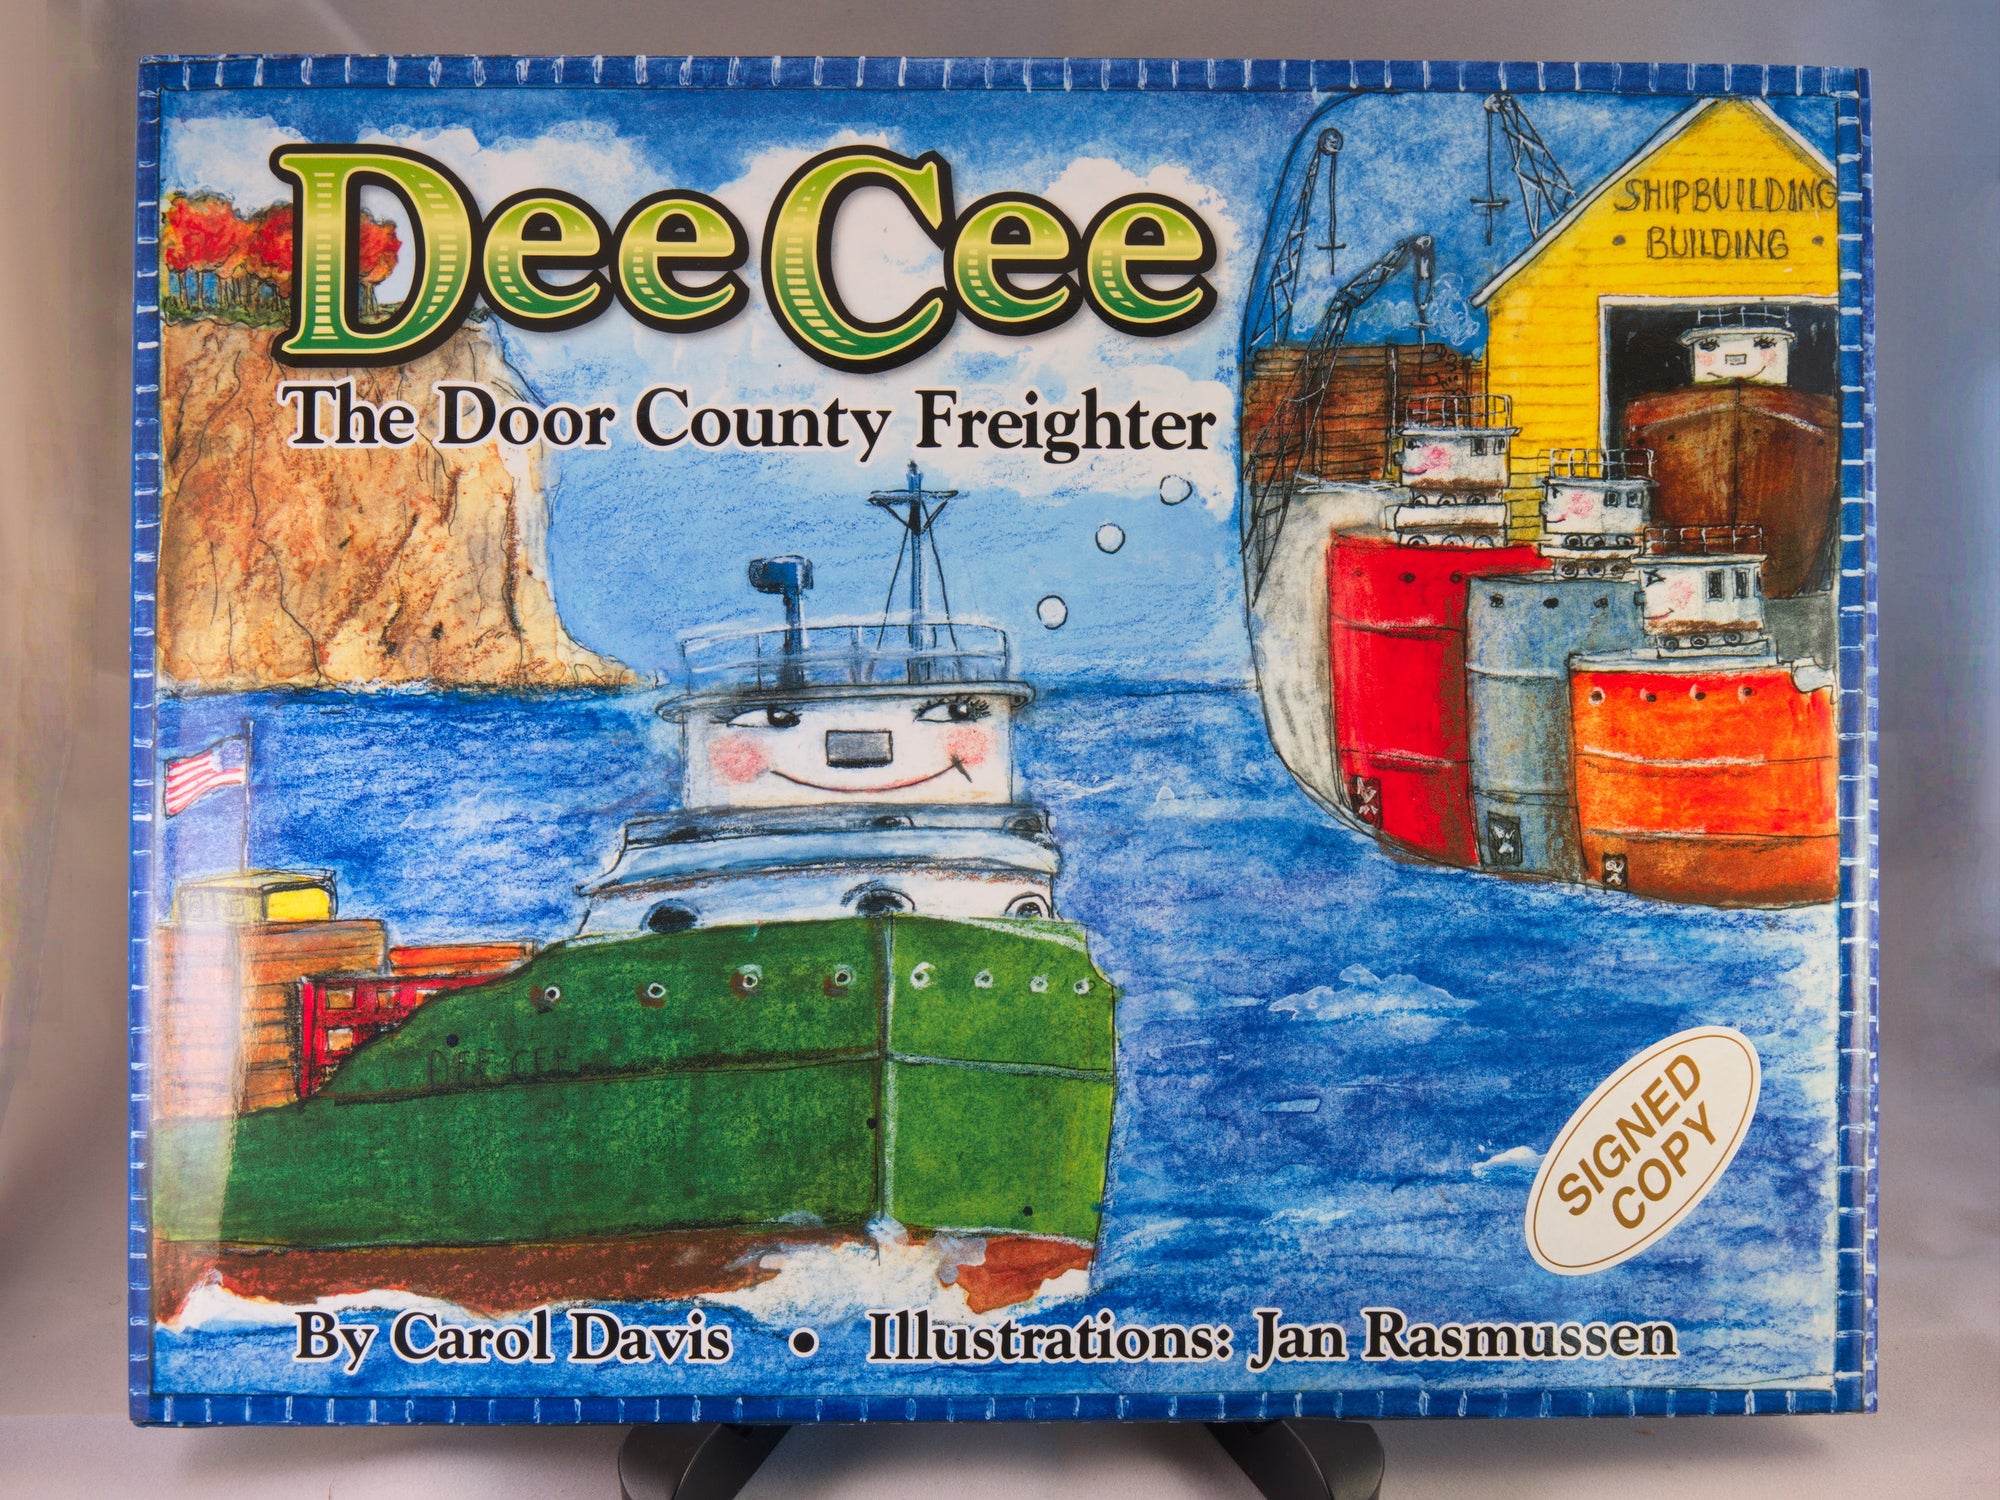 Dee Cee the Door County Freighter by author Carol Davis & illustrator Jan Rasmussen - signed copy (IS)